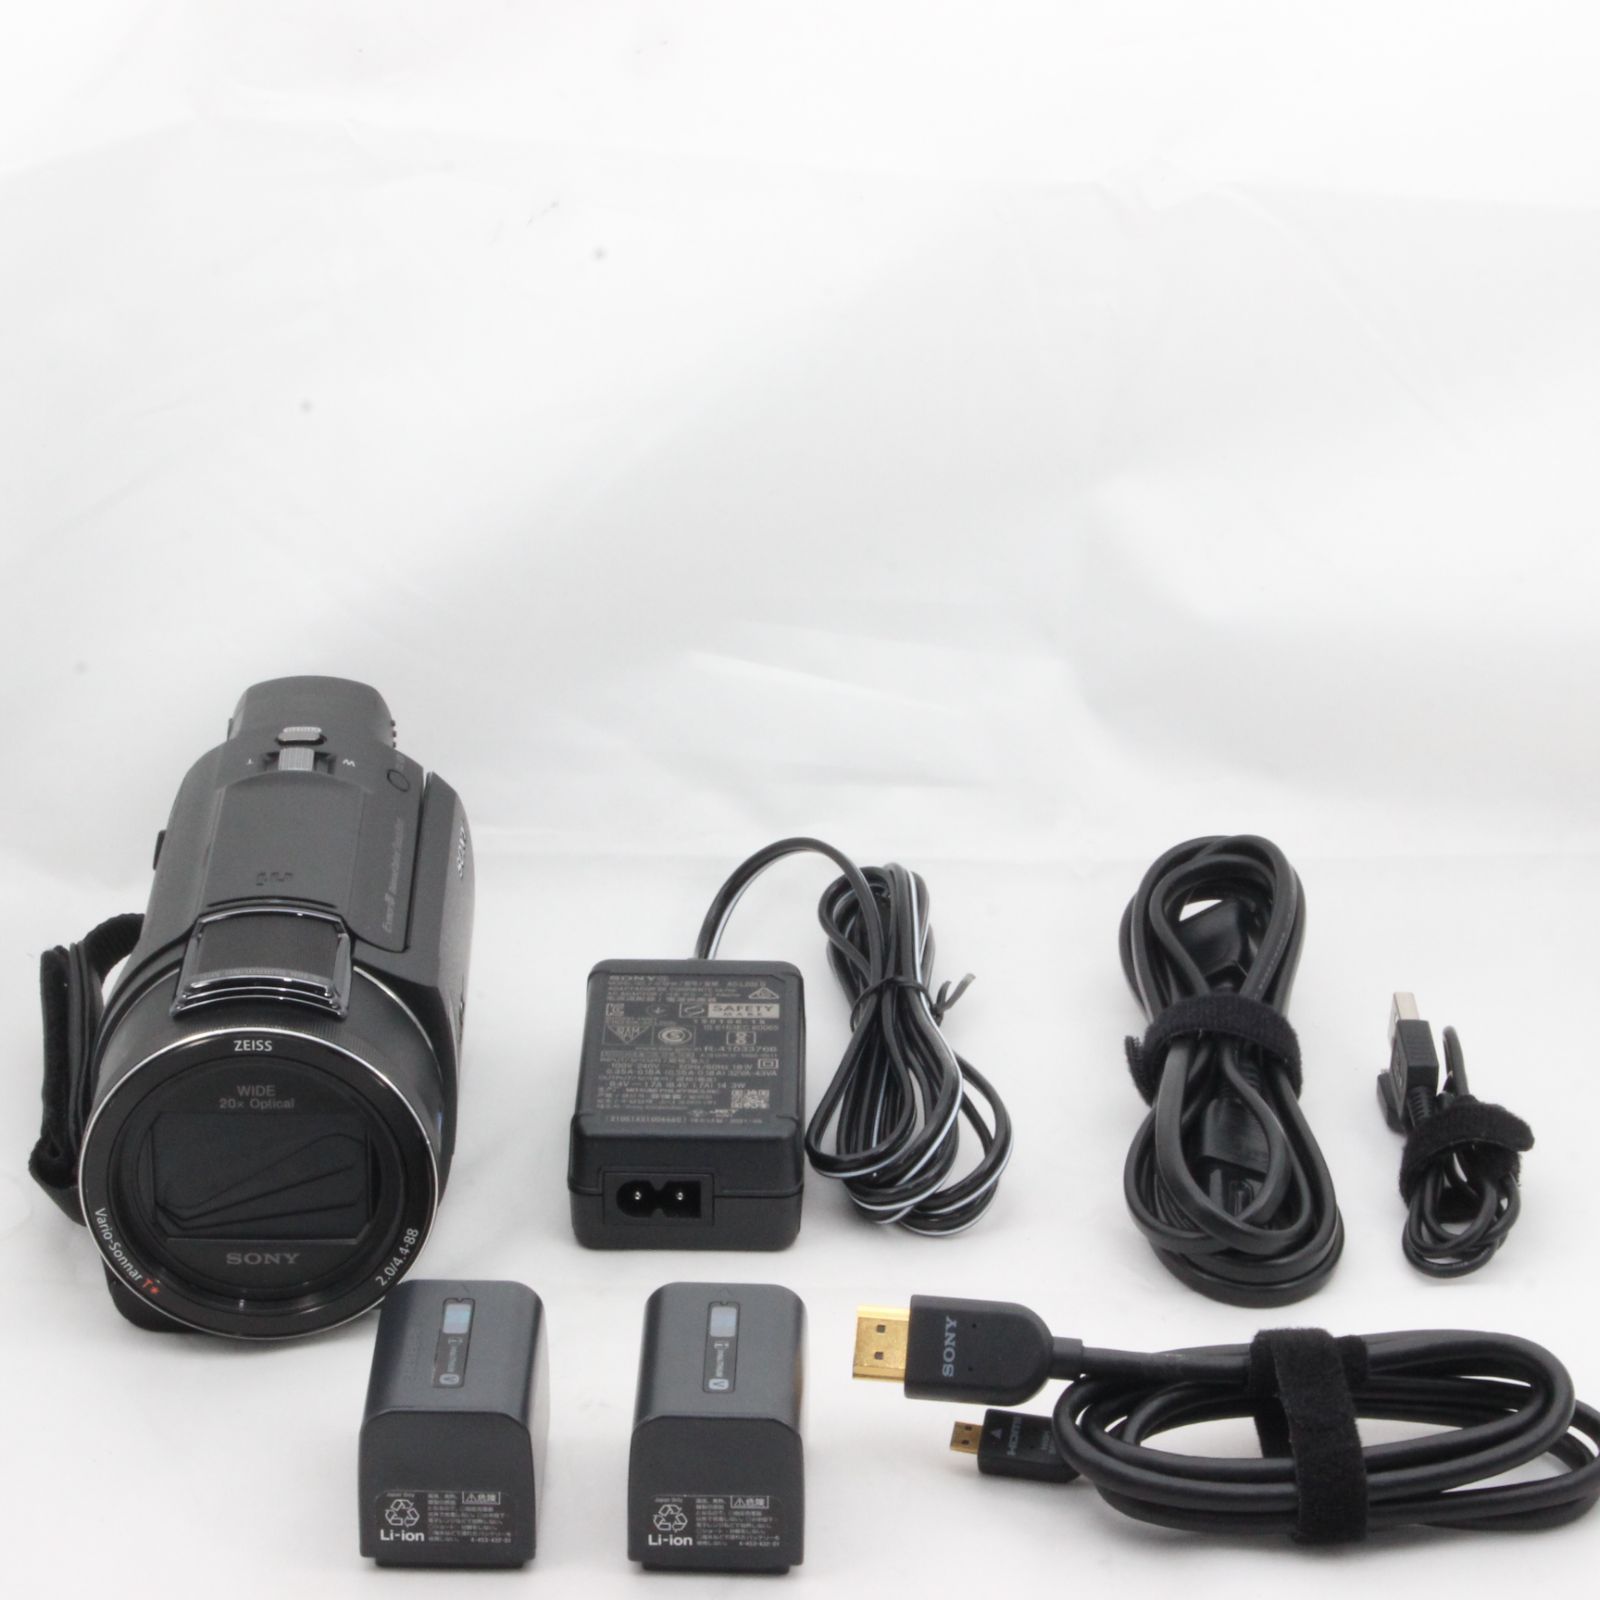 ソニー ビデオカメラ FDR-AX55 4K 64GB 光学20倍 ブラック Handycam FDR-AX55 BC - 3